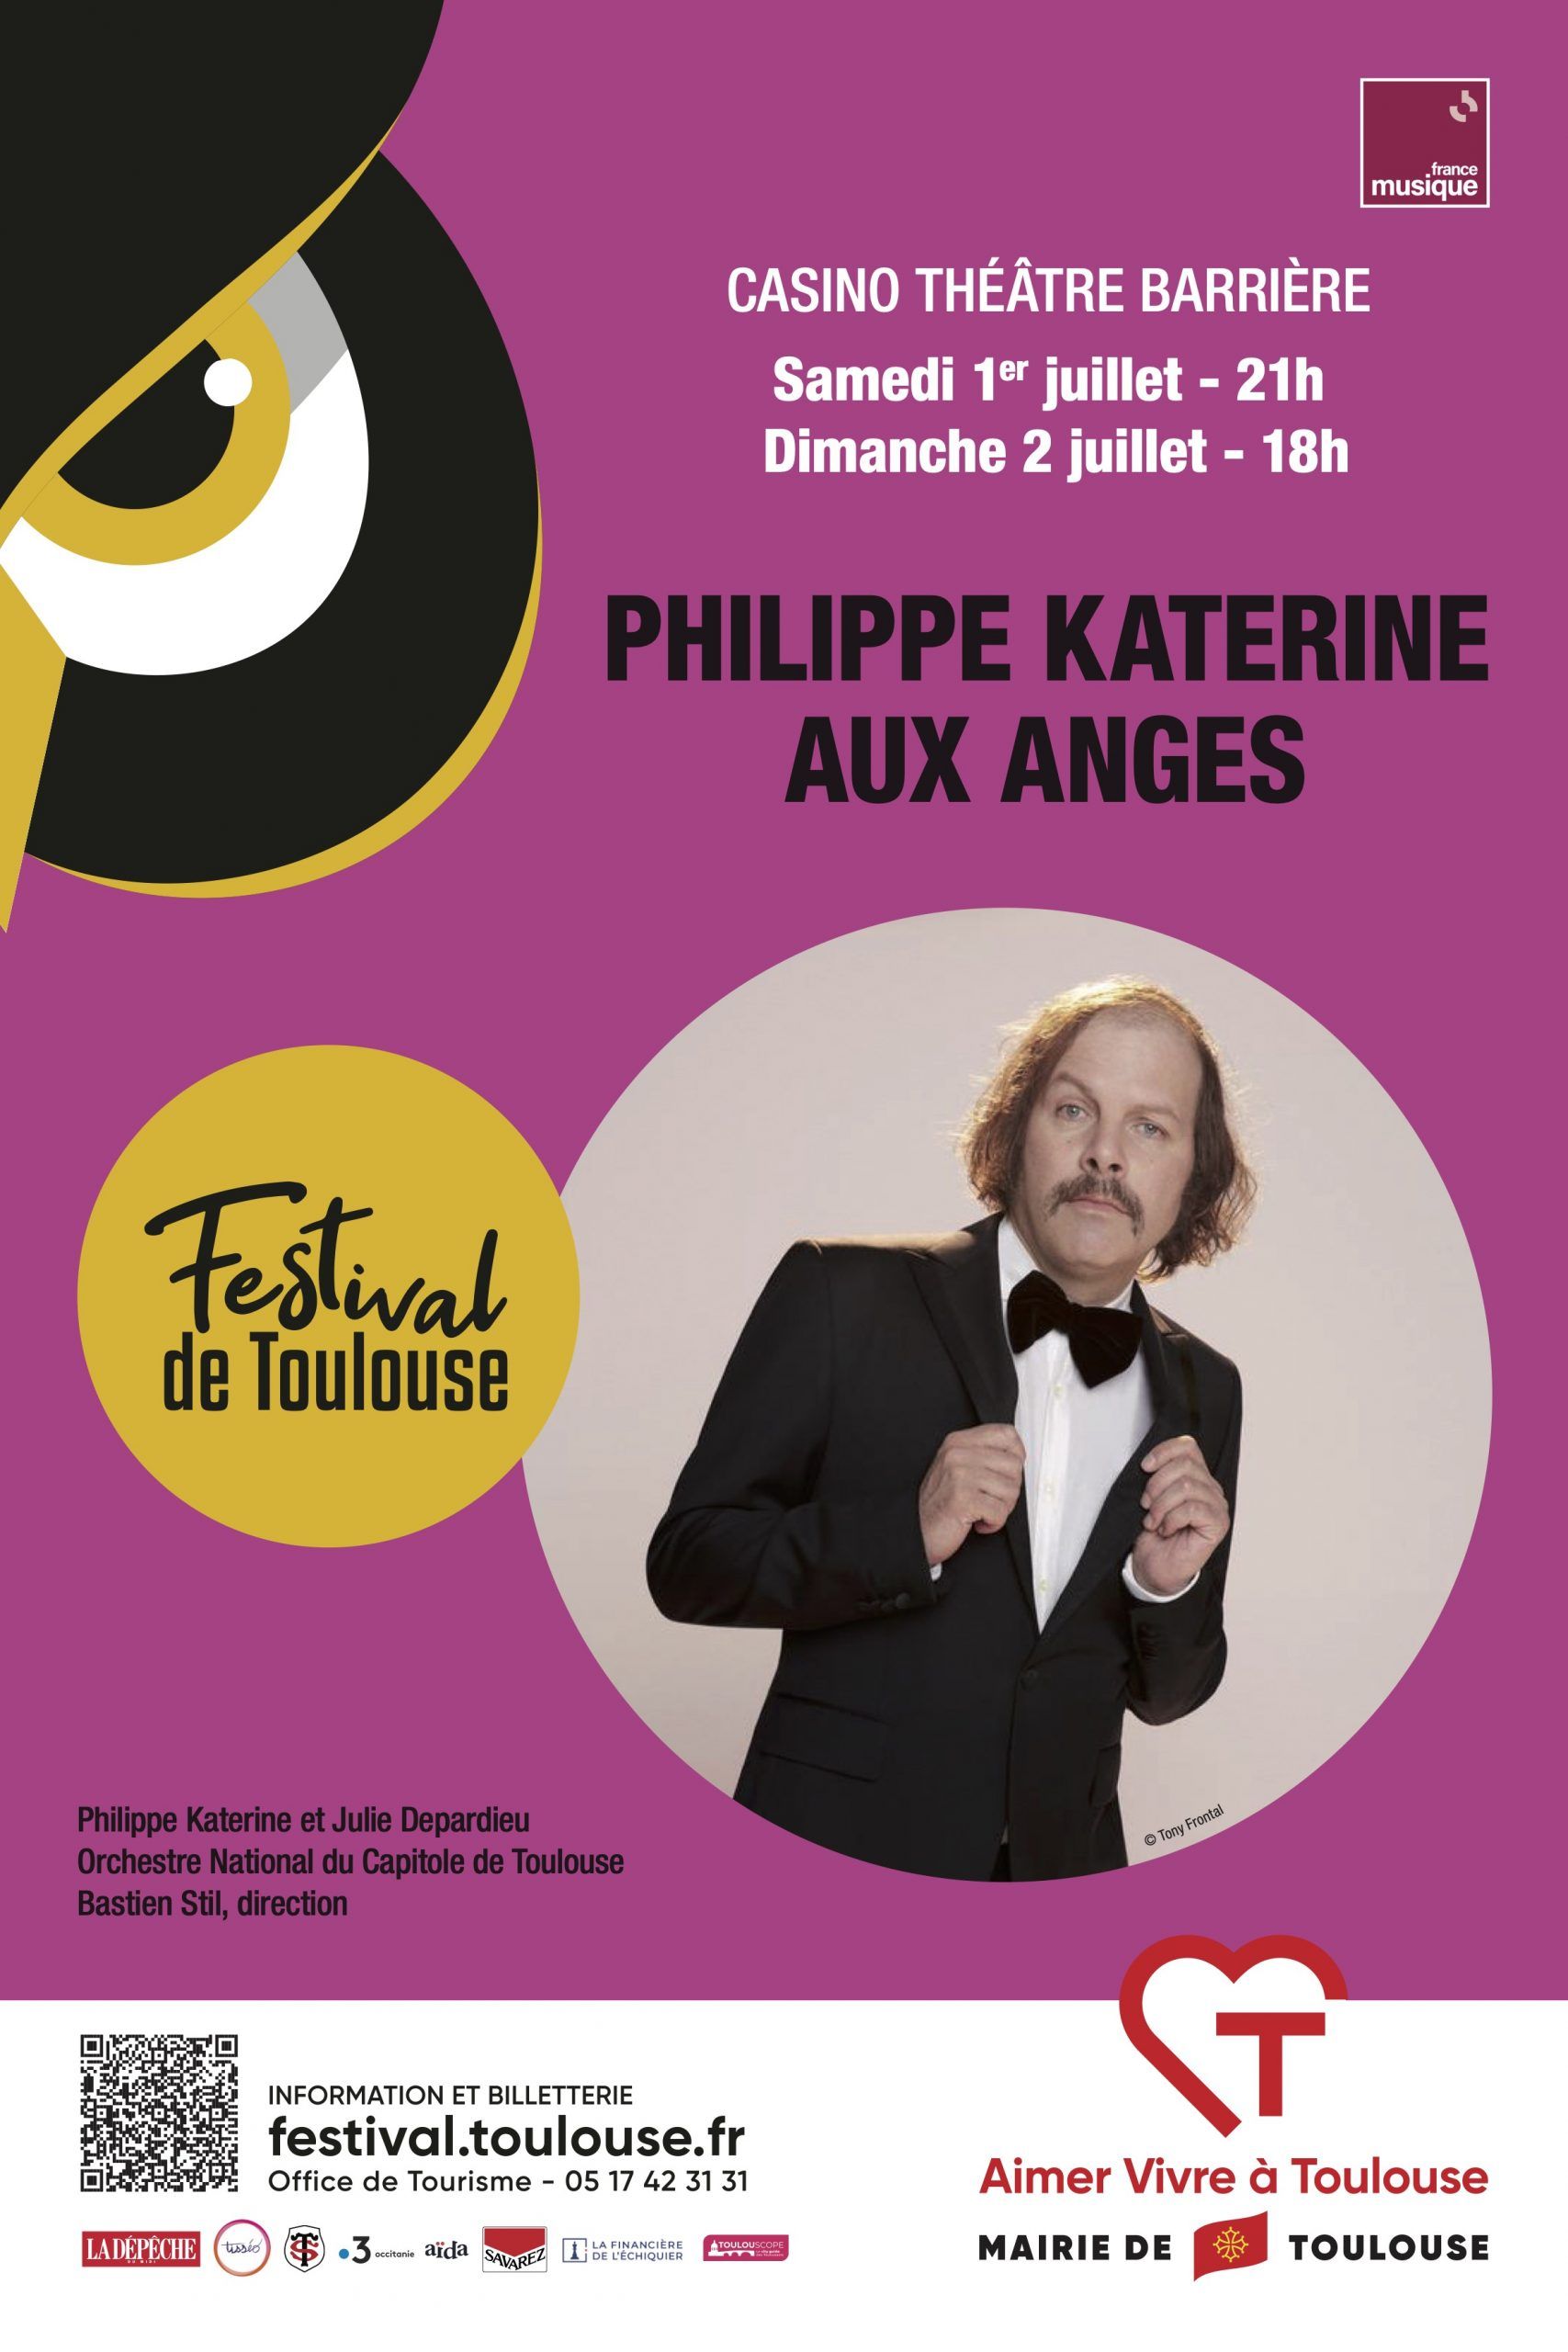 Festival de Toulouse - Philippe Katerine